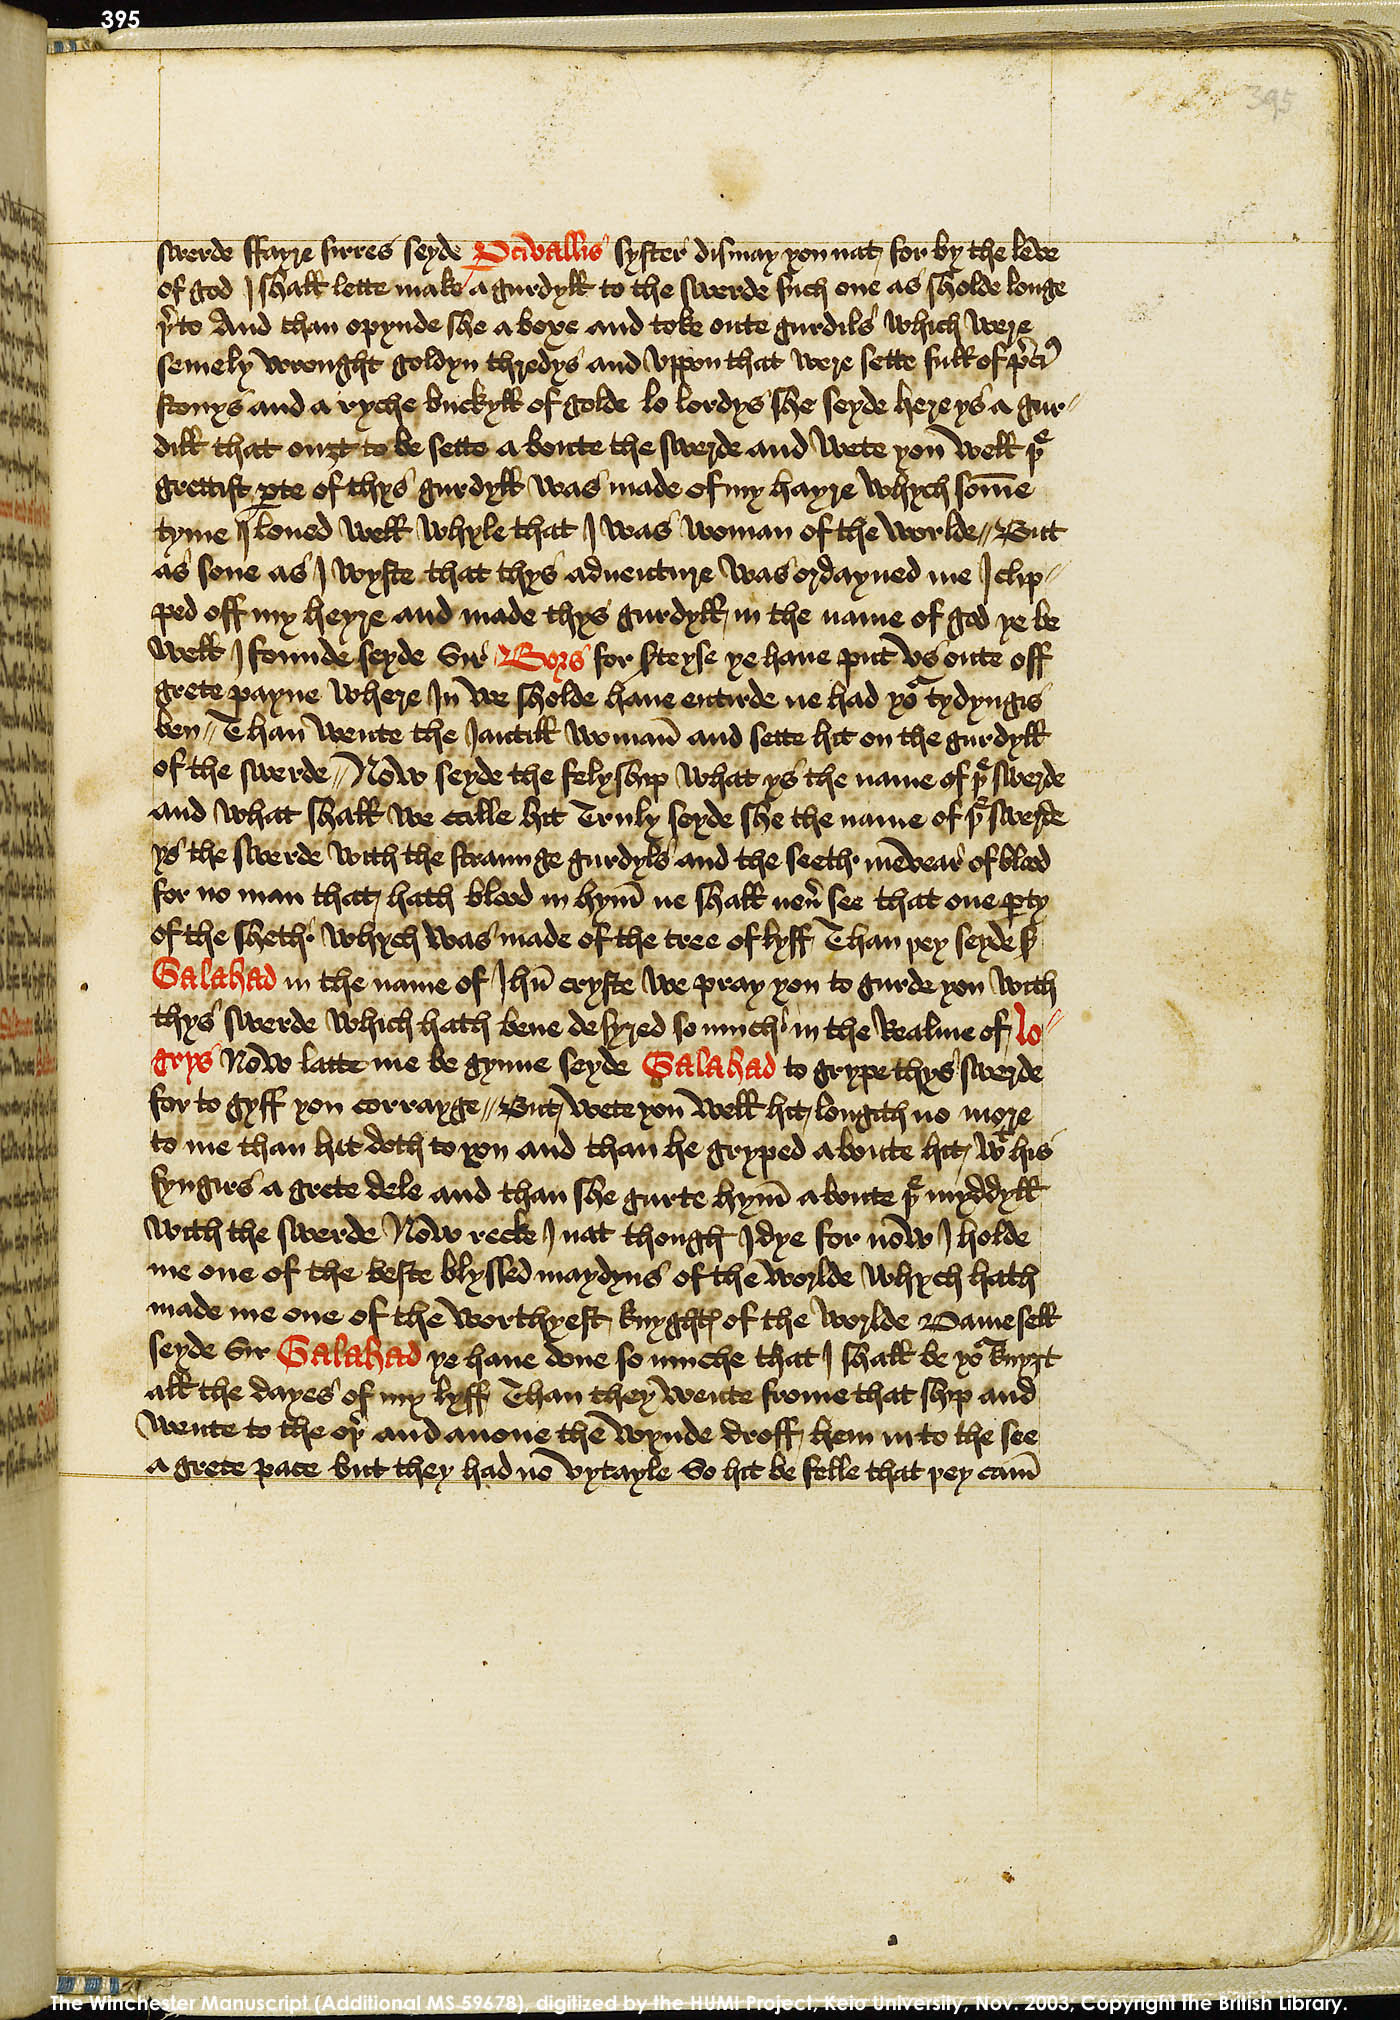 Folio 395r